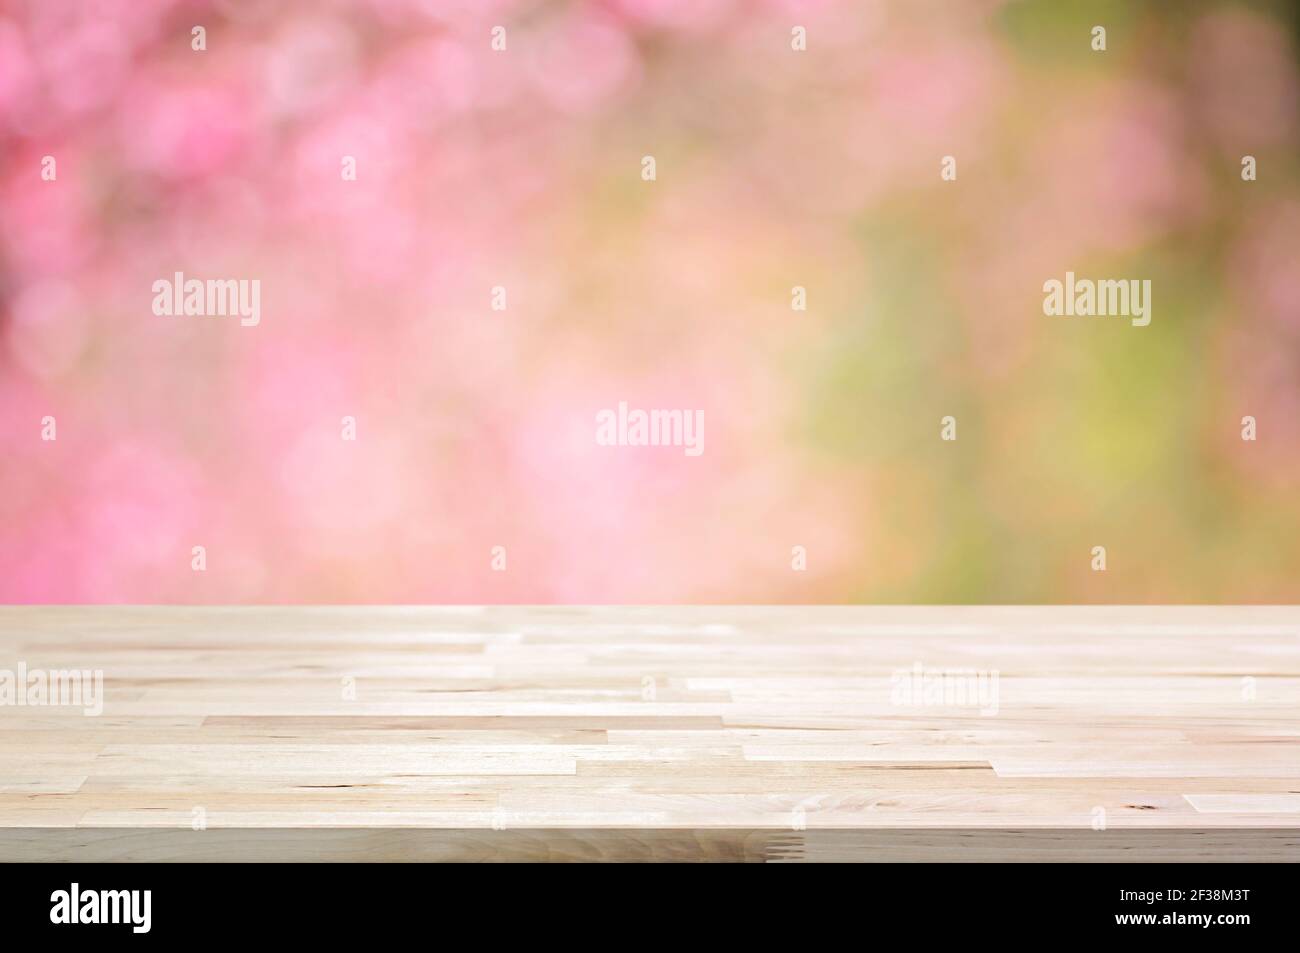 Holztischplatte auf verschwommenem Hintergrund von rosa Kirschblüte Blumen - kann für die Anzeige oder Montage Ihrer Produkte verwendet Stockfoto